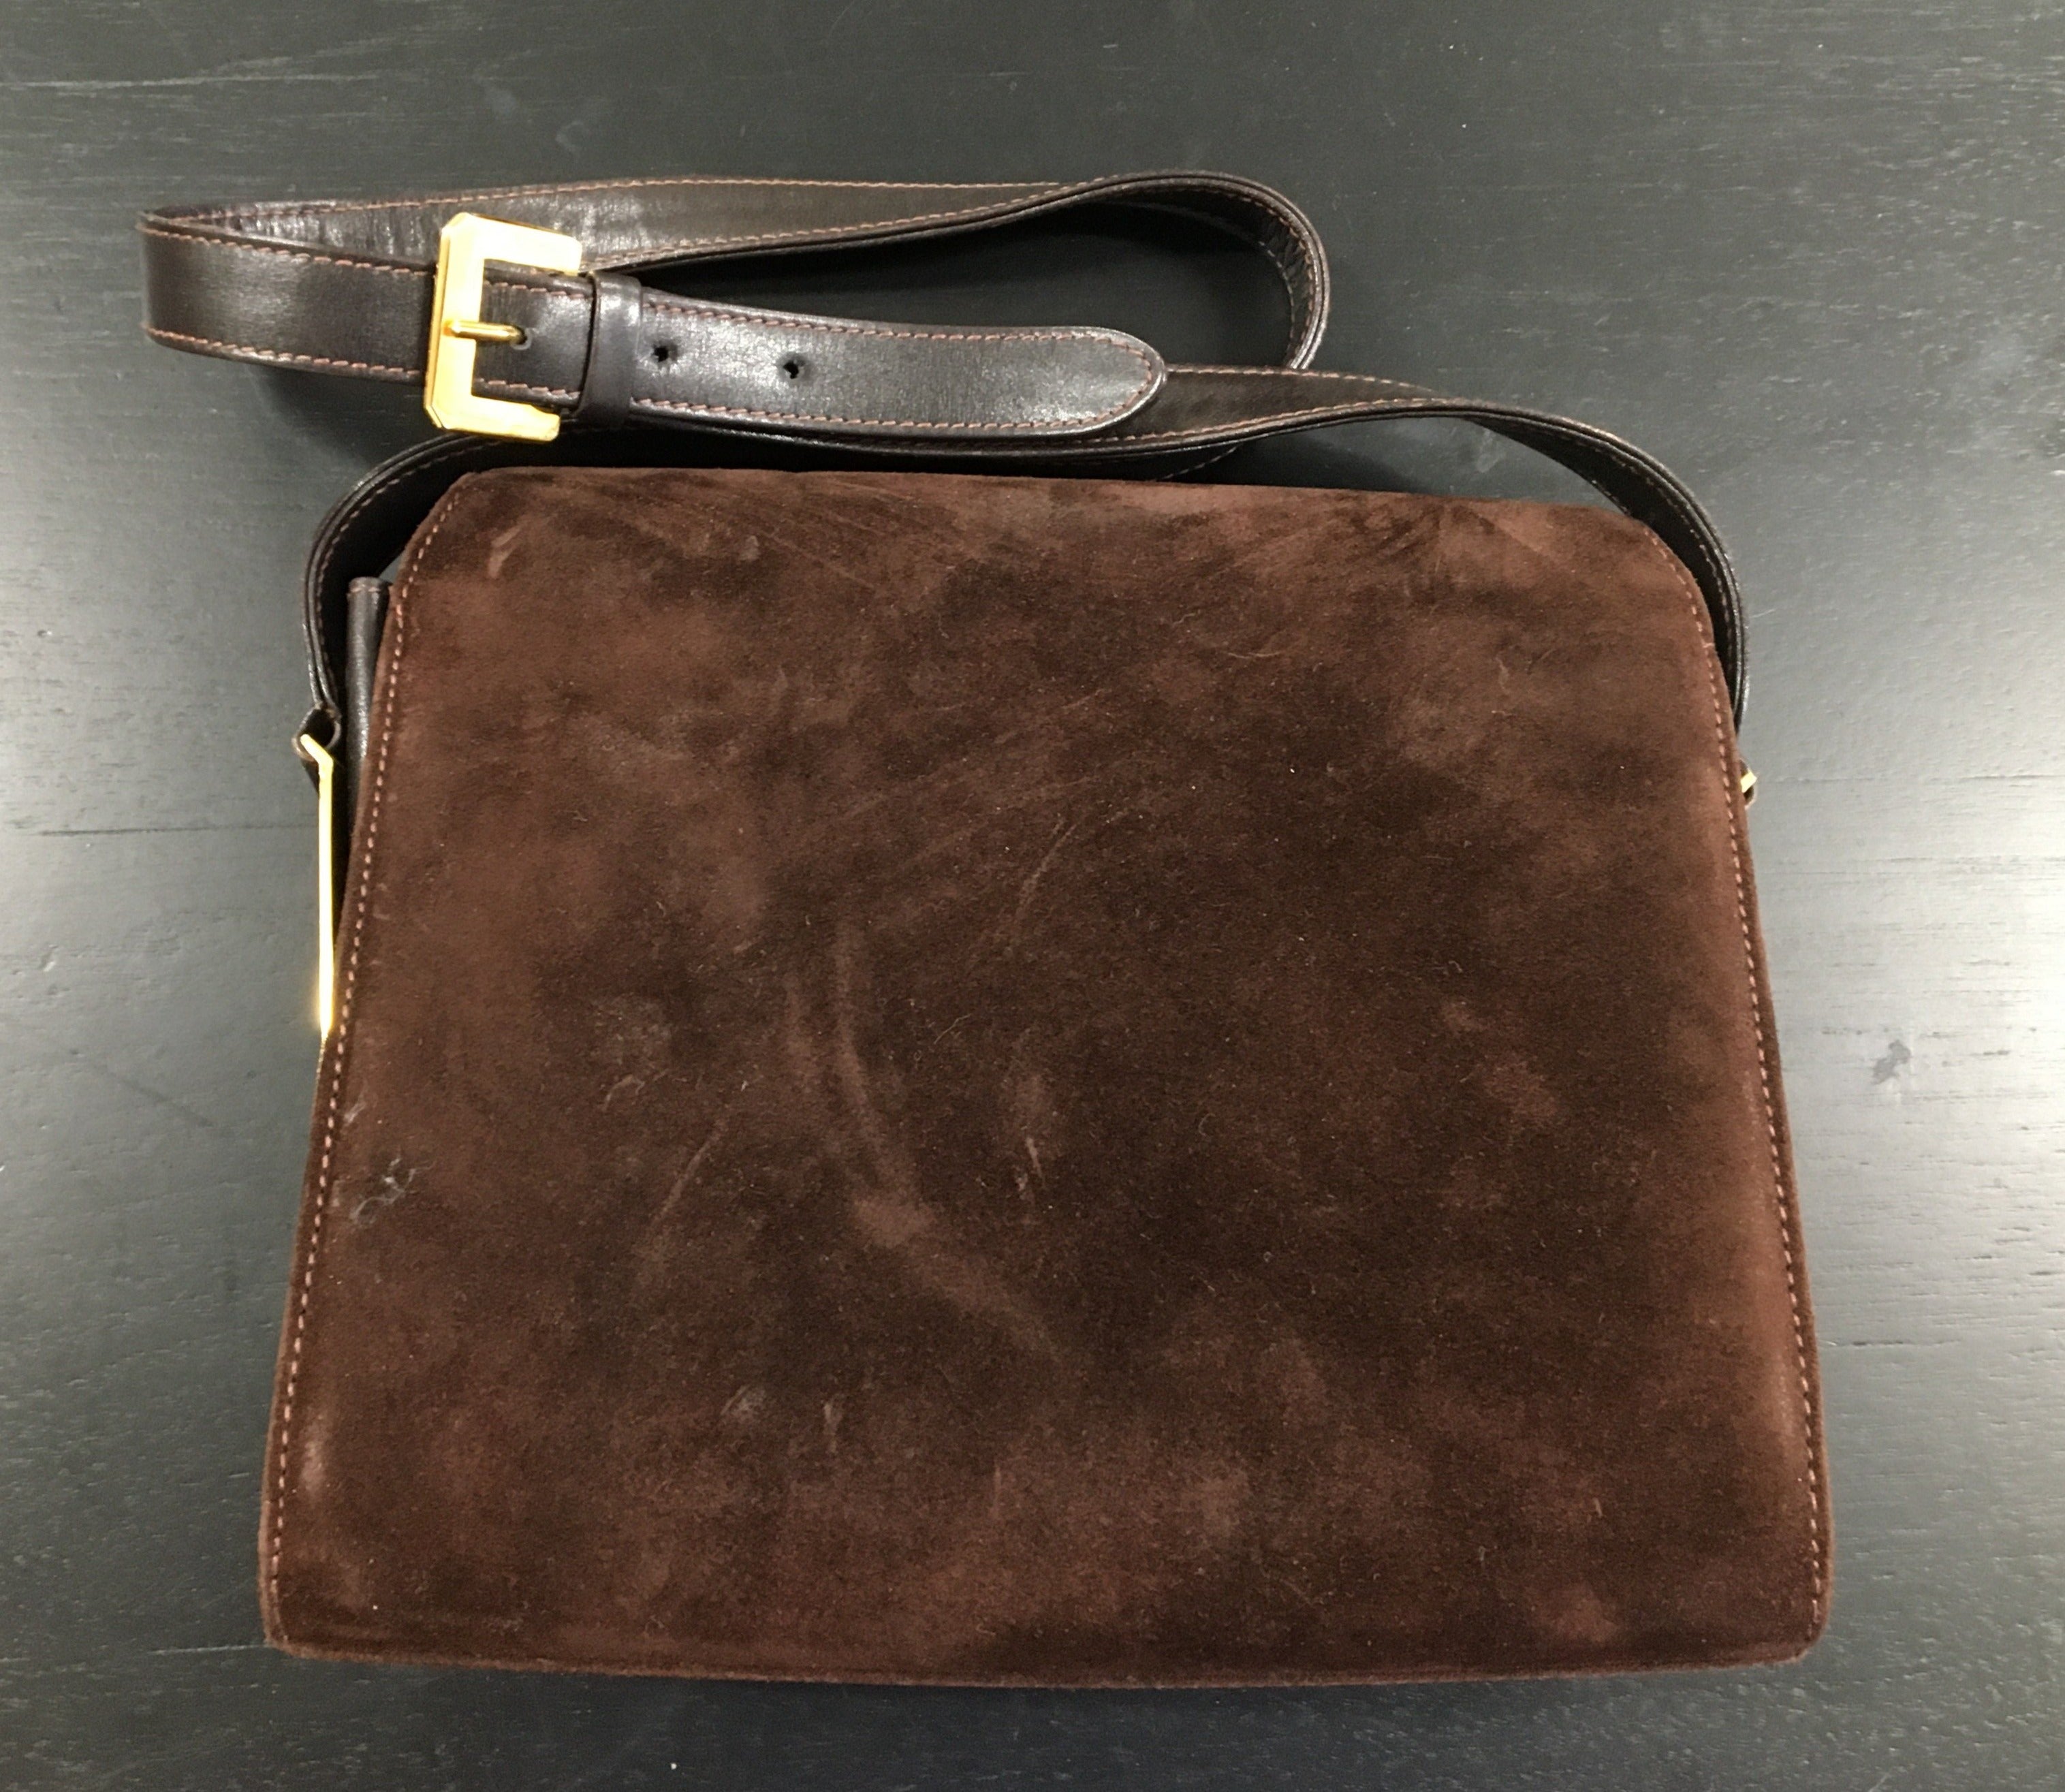 Vintage brown suede Gucci handbag purse Brev.N.36282